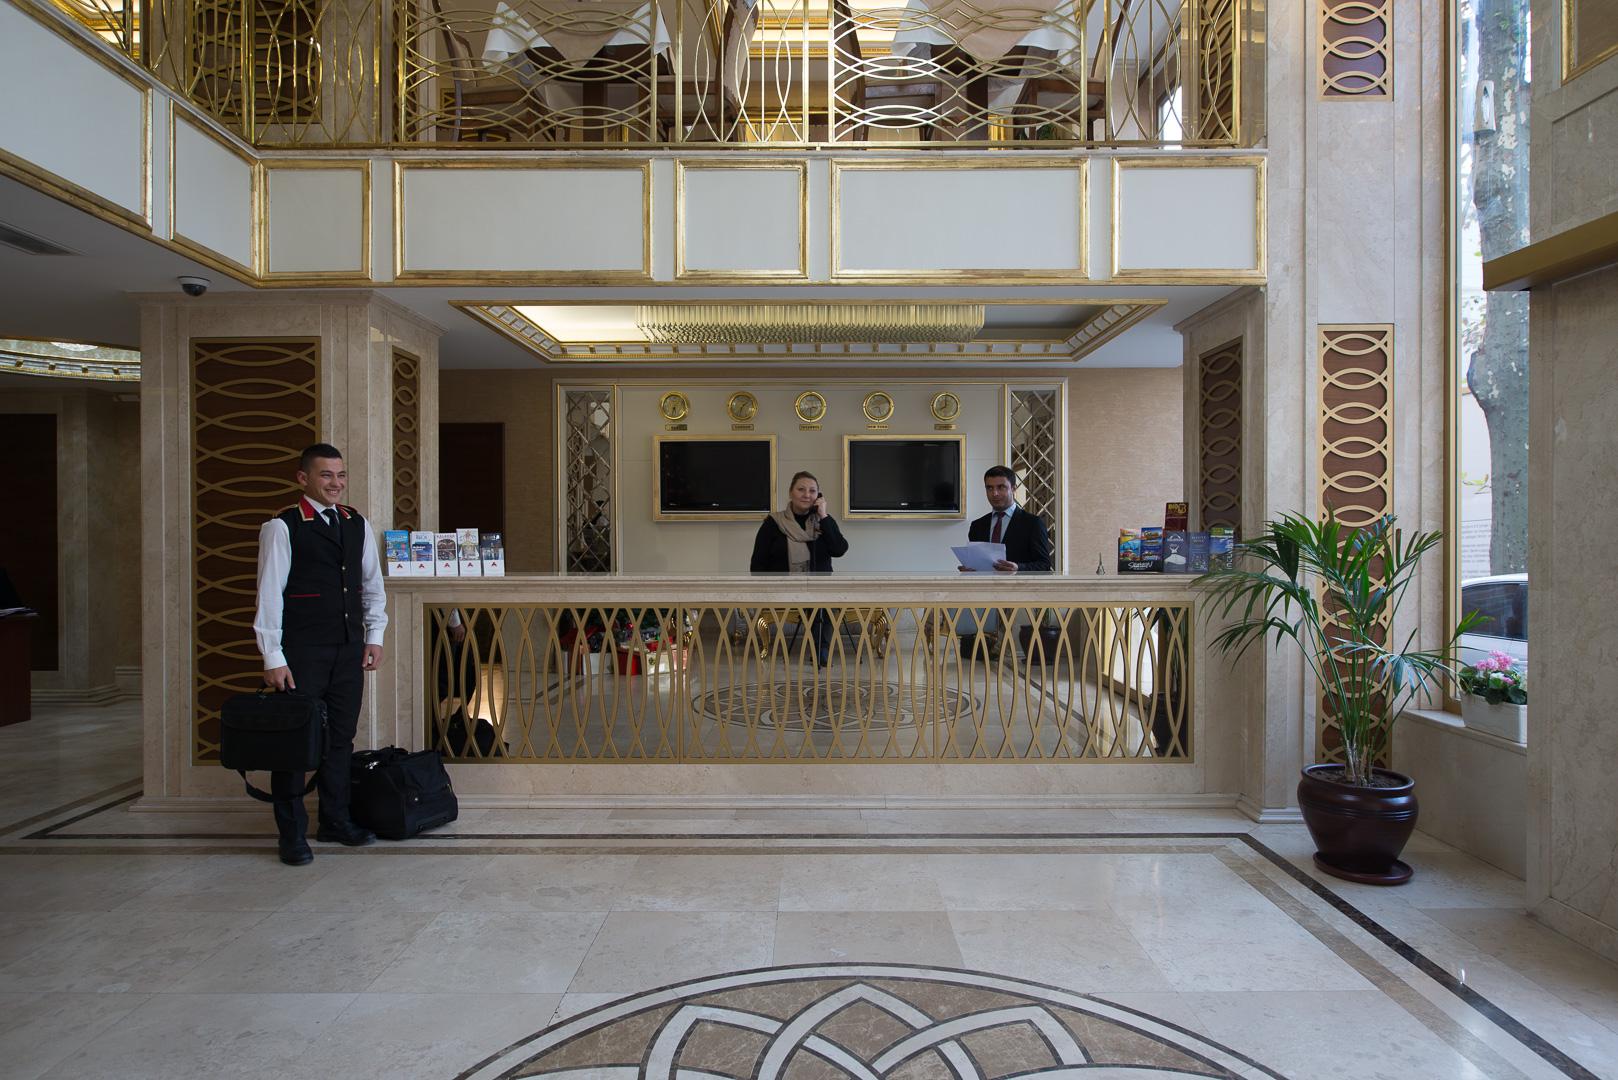 アンテア ホテル オールドシティ イスタンブール エクステリア 写真